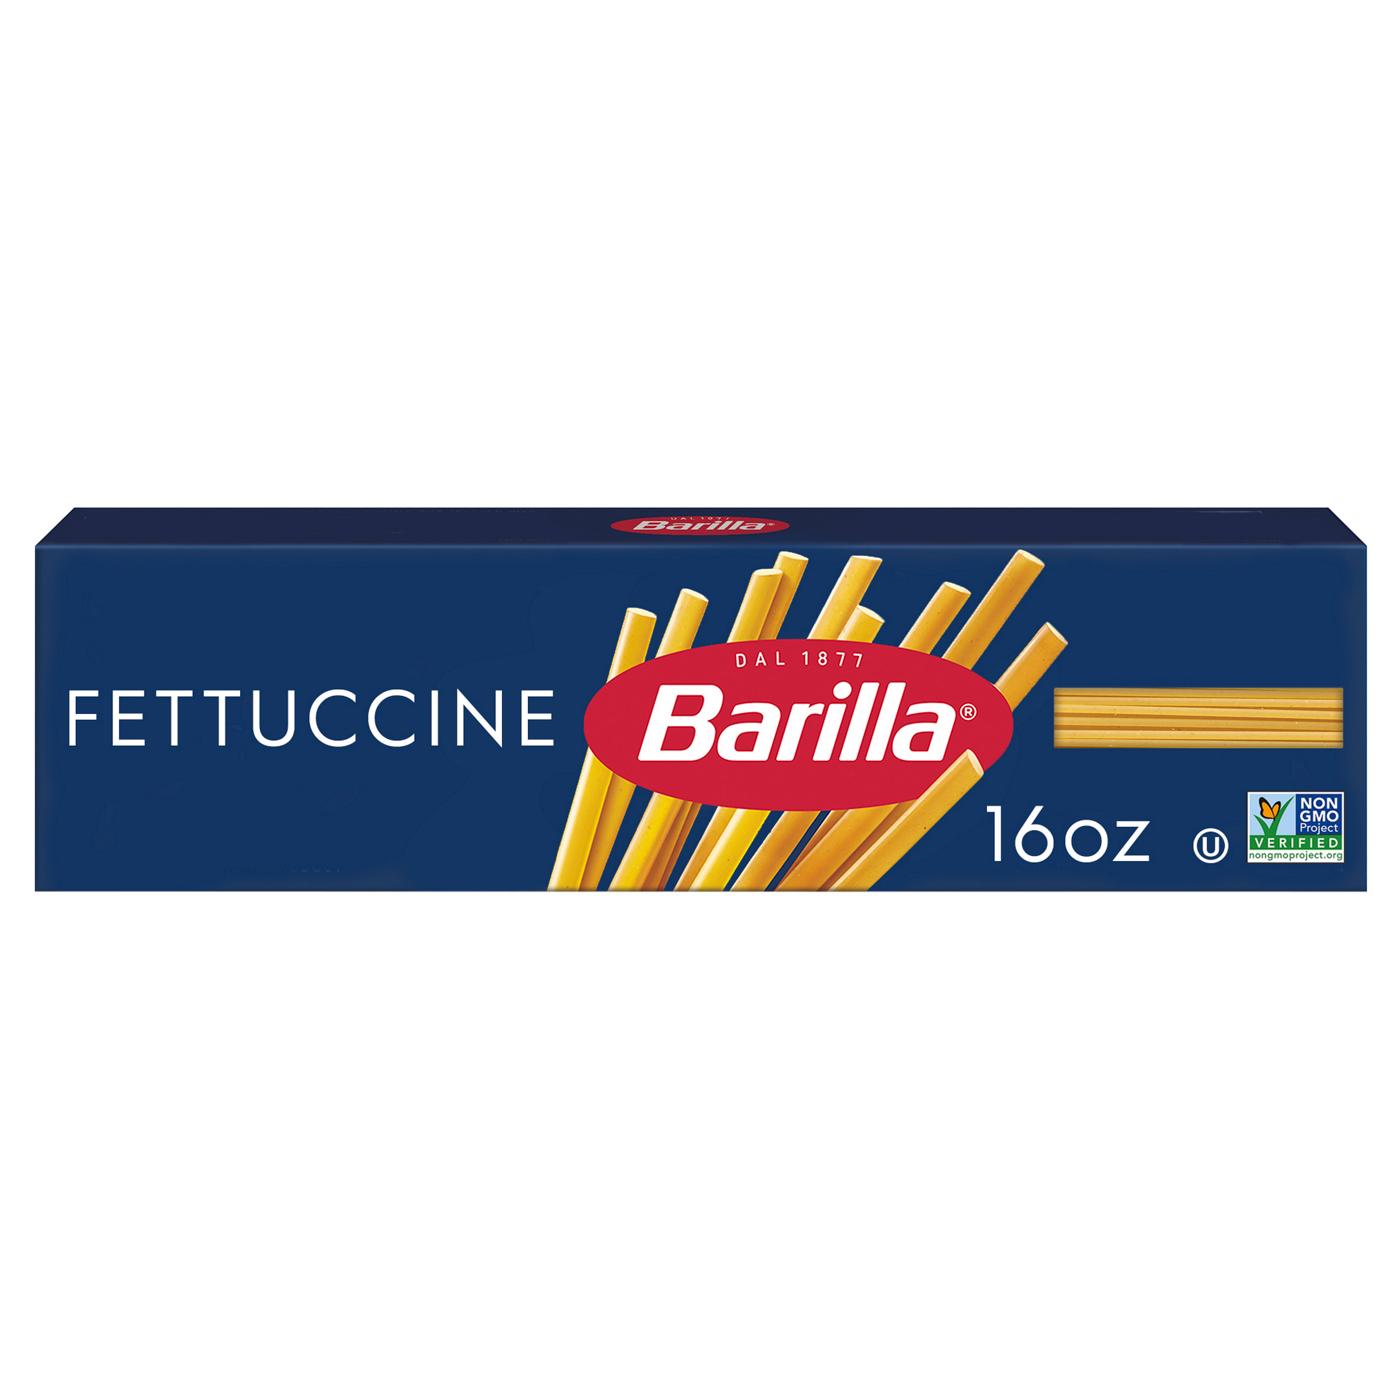 Barilla Fettuccine Pasta; image 1 of 6